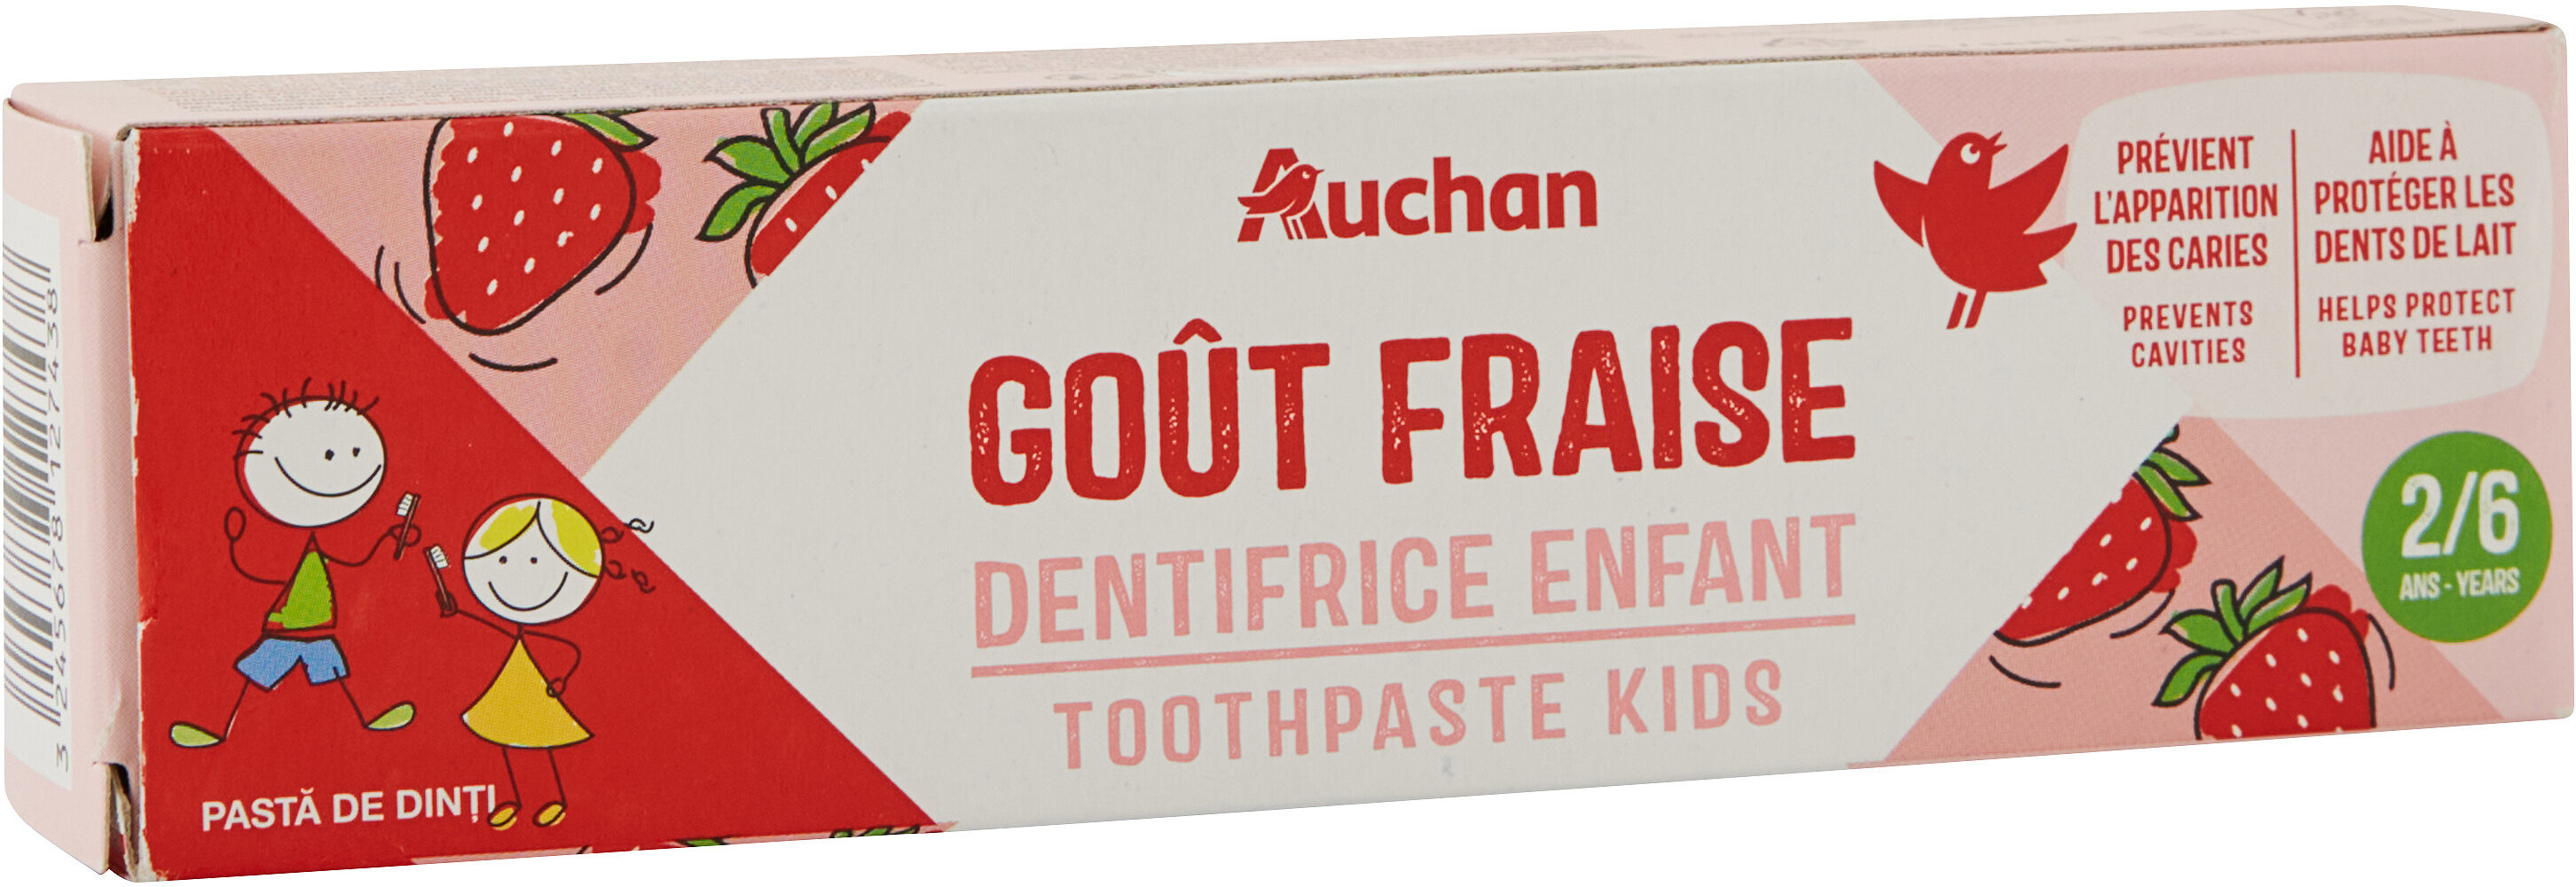 Auchan kids dentifrice fraise tube 2 + - 50ml - Product - fr